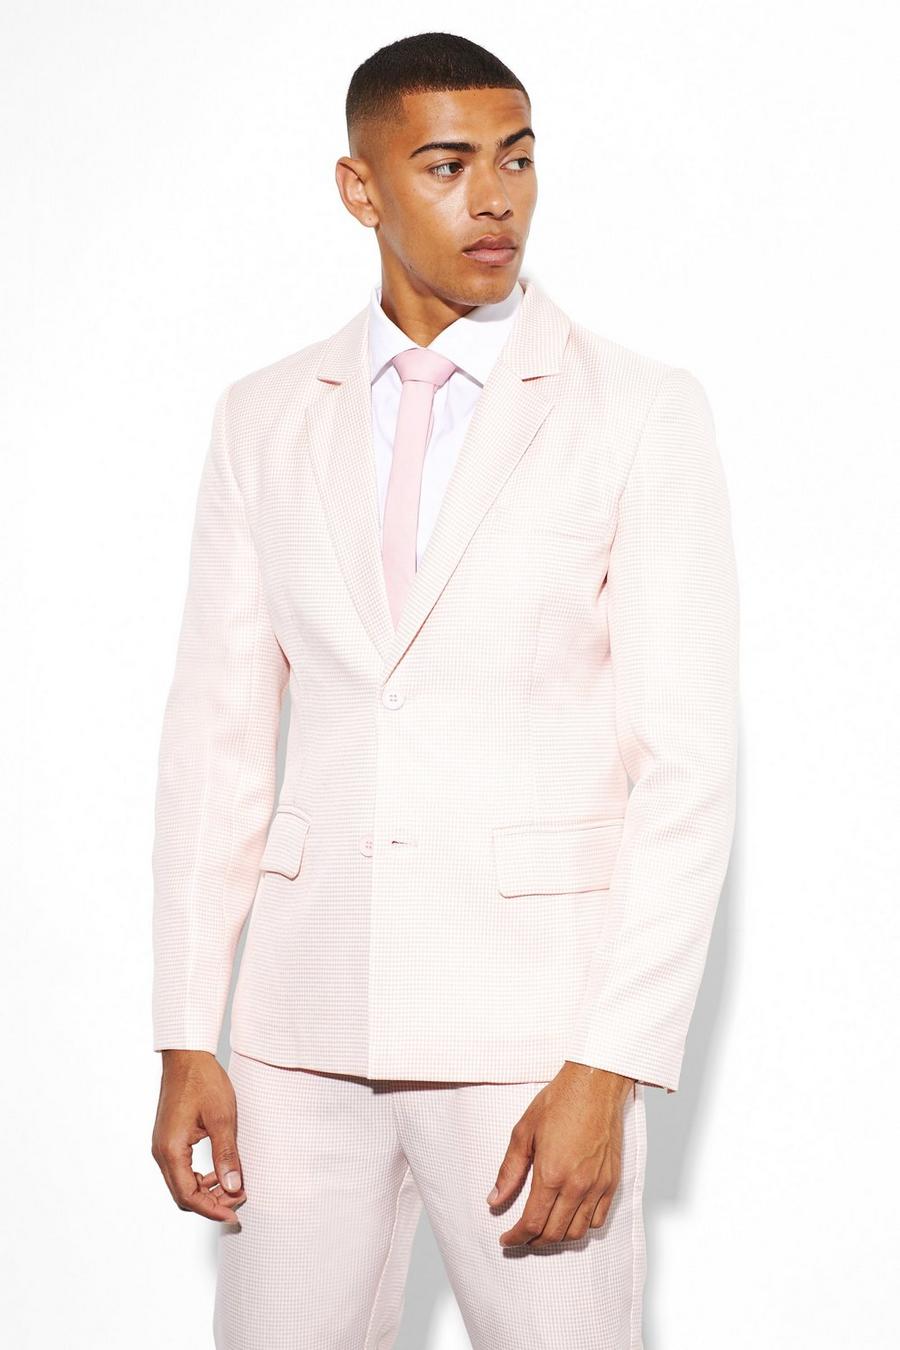 Einreihige Slim-Fit Anzugjacke mit Hahnentritt-Print, Pale pink